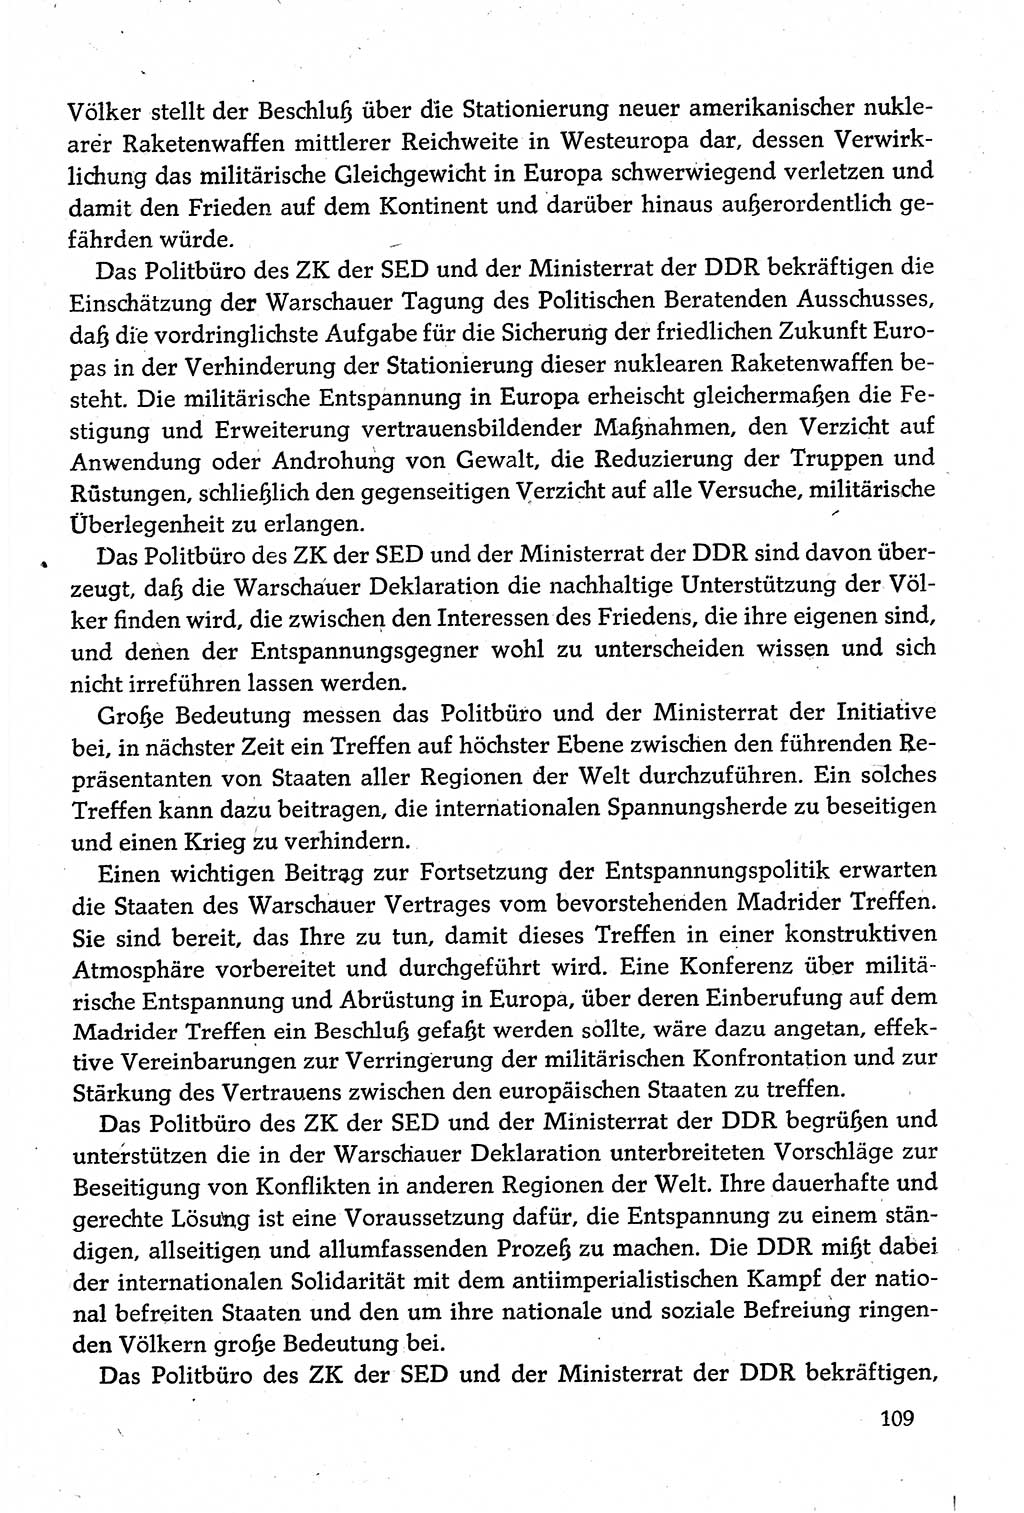 Dokumente der Sozialistischen Einheitspartei Deutschlands (SED) [Deutsche Demokratische Republik (DDR)] 1980-1981, Seite 109 (Dok. SED DDR 1980-1981, S. 109)